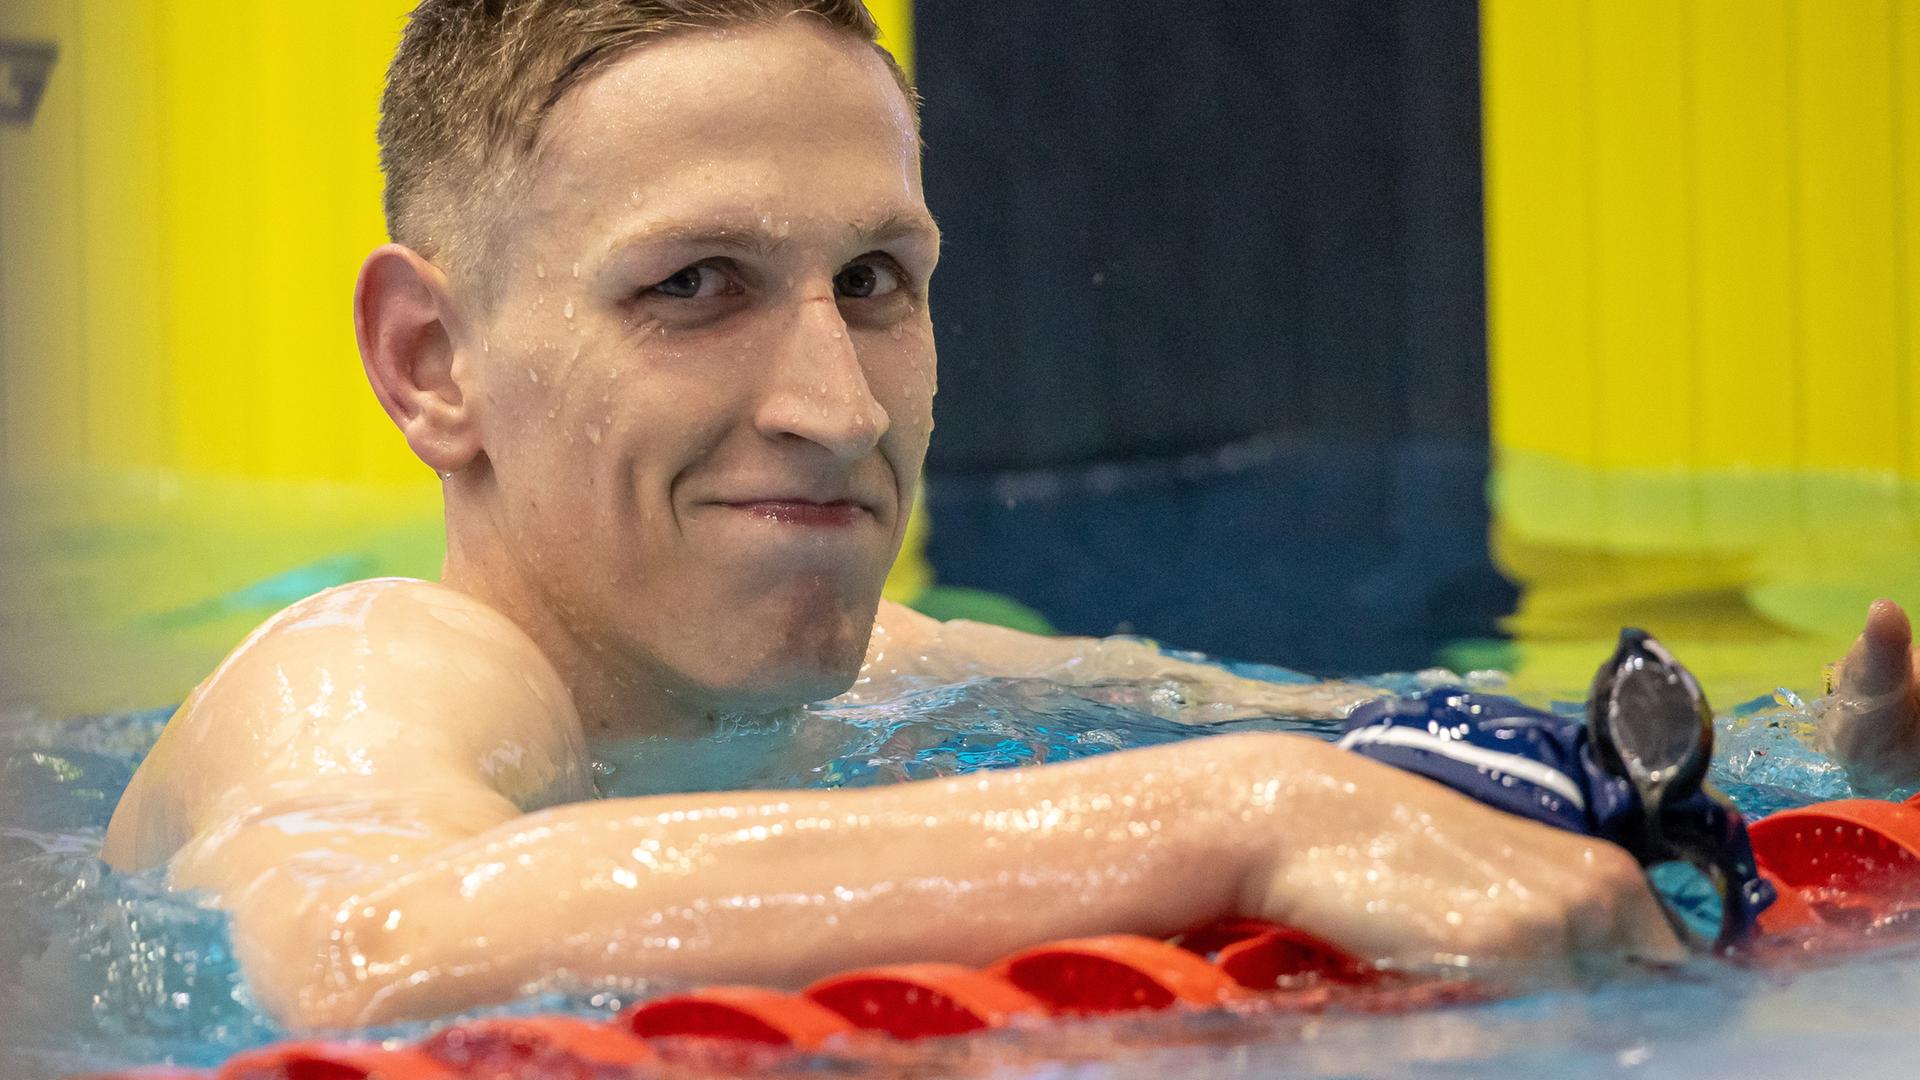 Lukas Märtens im Schwimmbecken. Er hält sich an der Wettkampfleine fest und grinst verschmitzt in die Kamera.